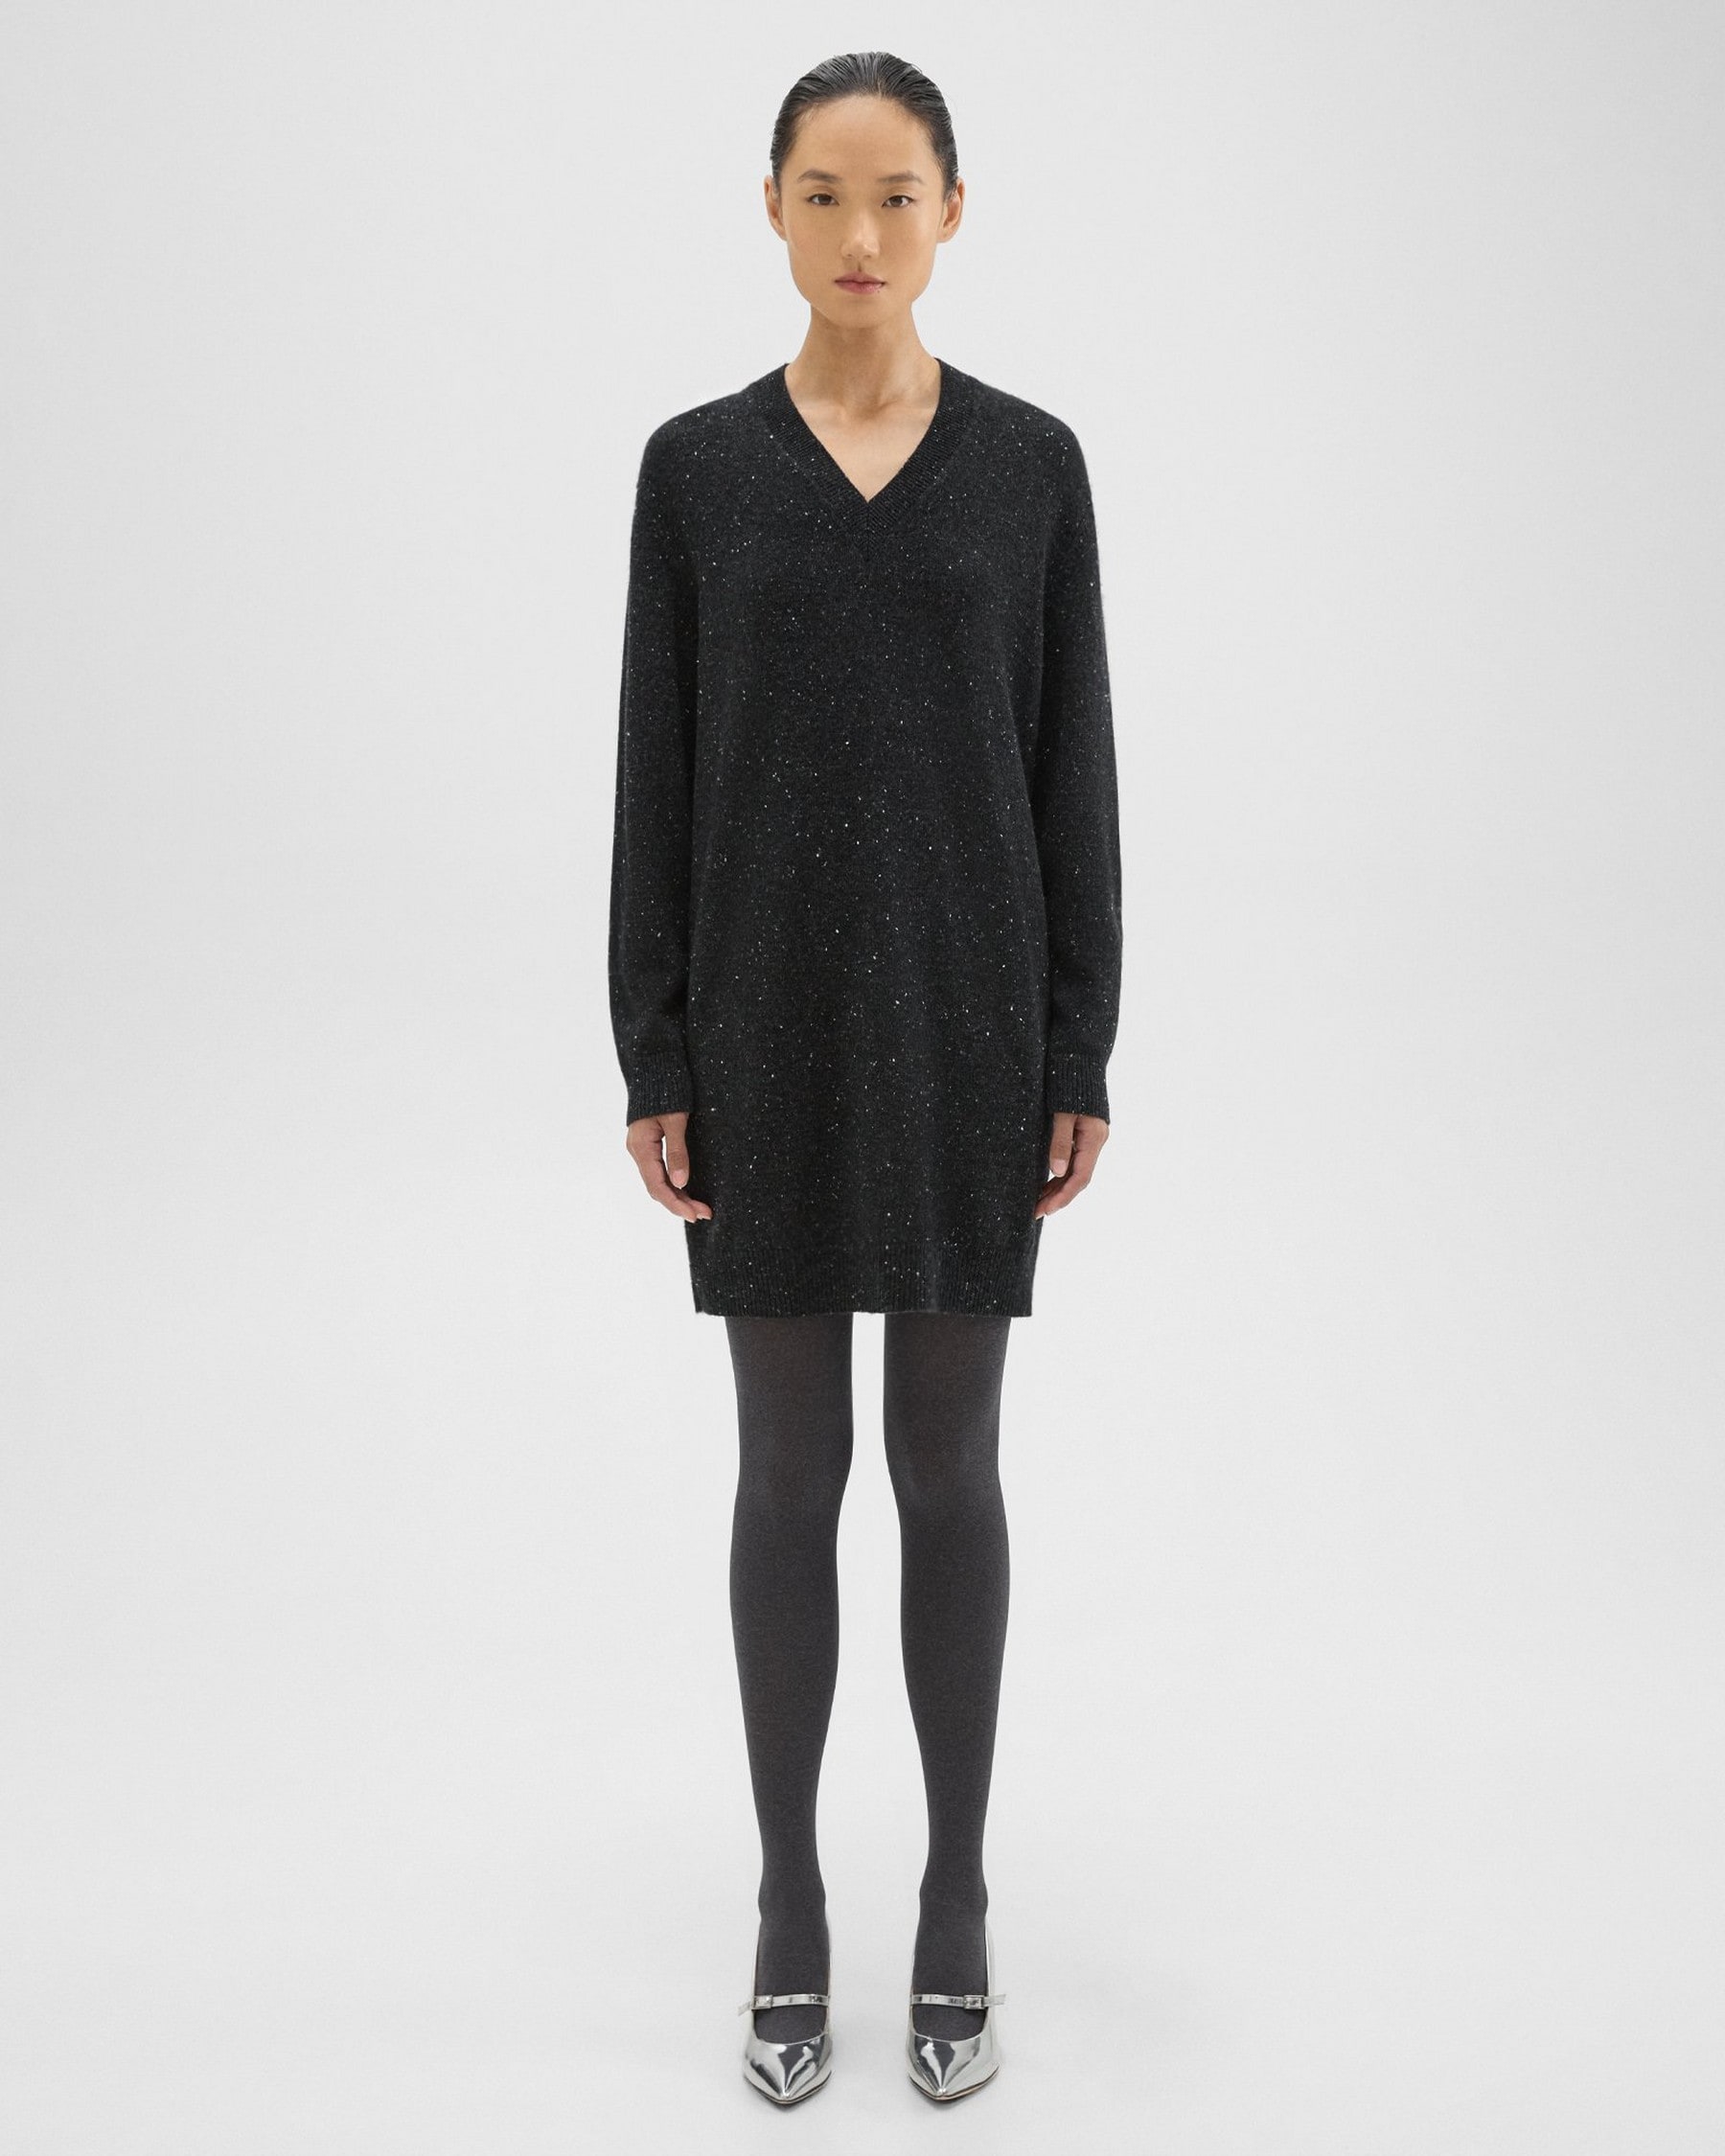 띠어리 Theory V-Neck Sweater Dress in Donegal Wool-Cashmere,CHARCOAL MULTI